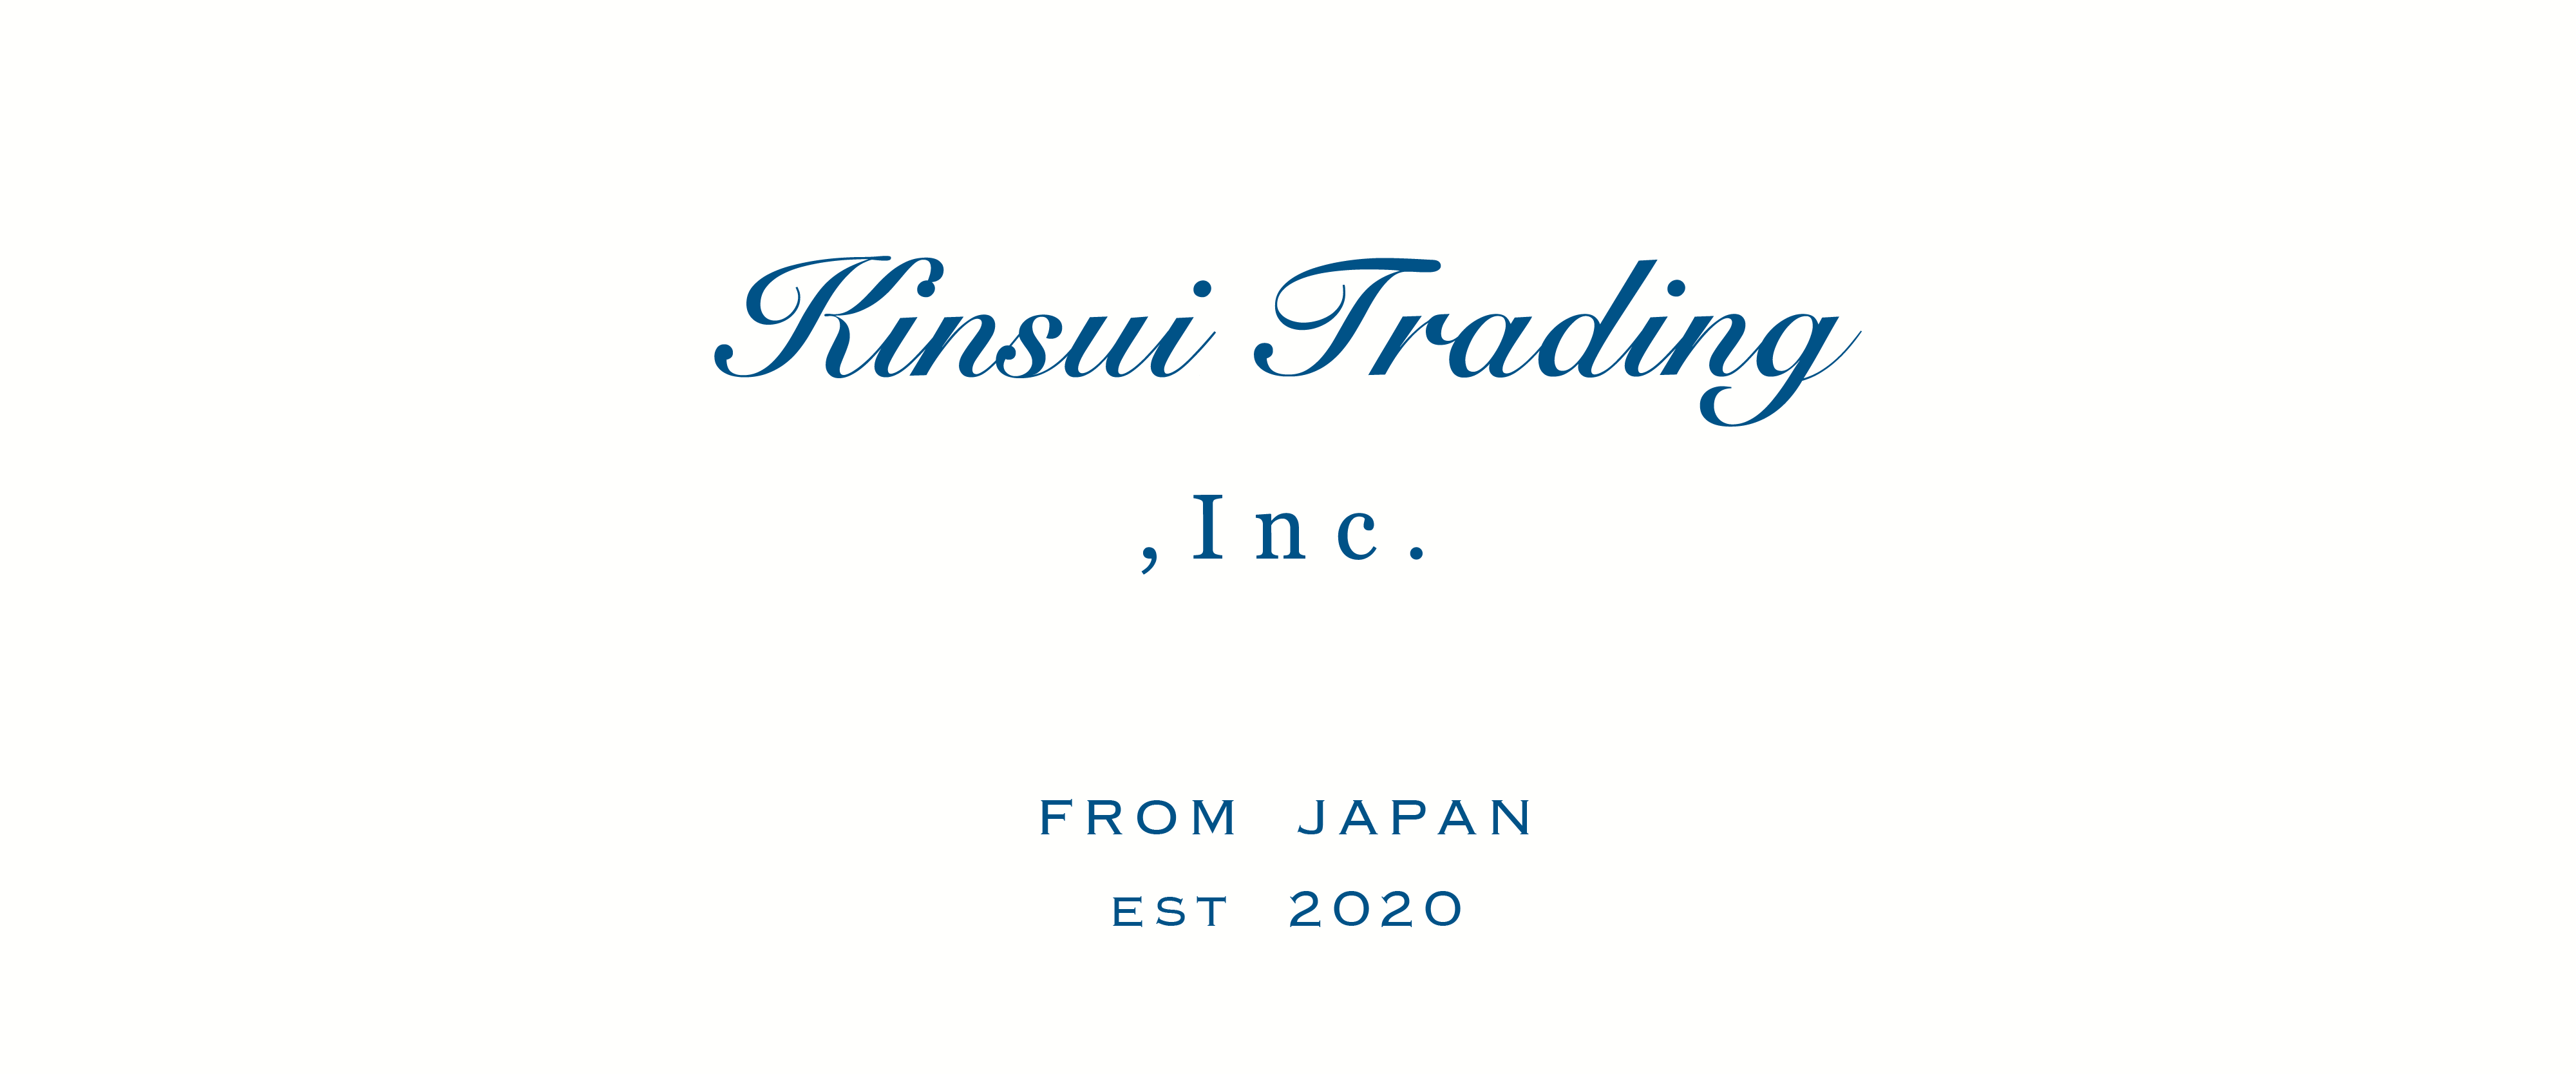 Kinsui Trading, Inc.